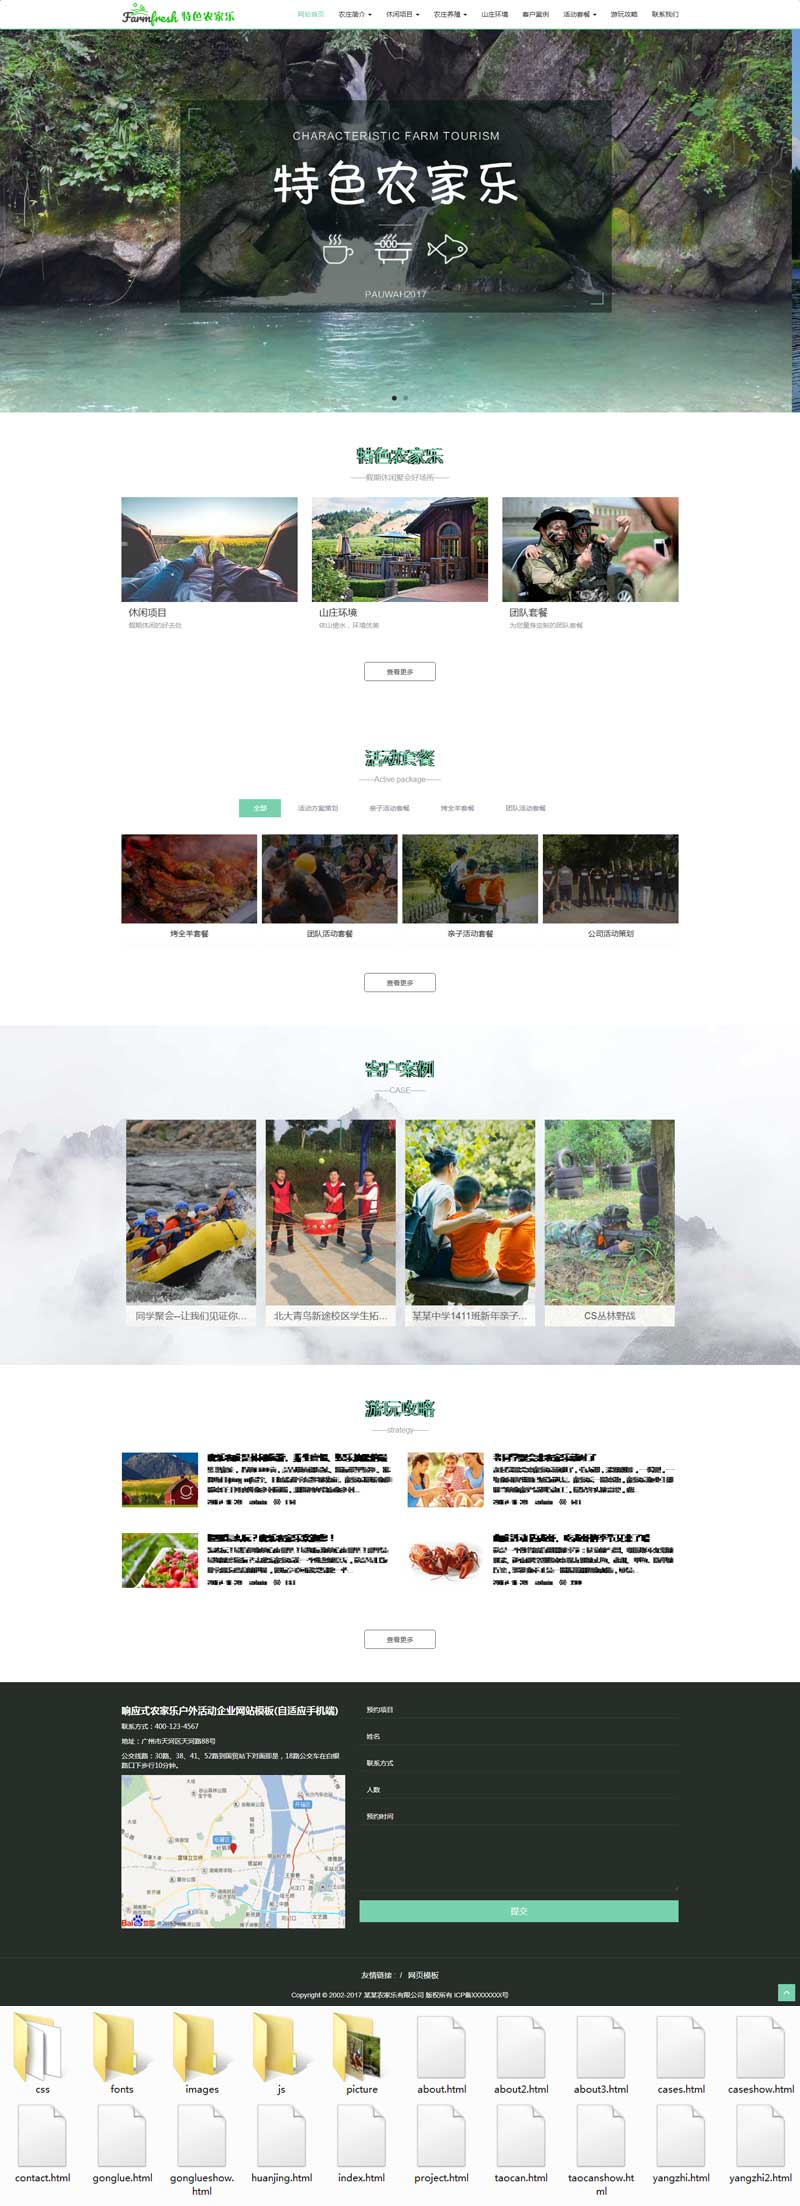 绿色宽屏的农庄旅游休闲网站模板